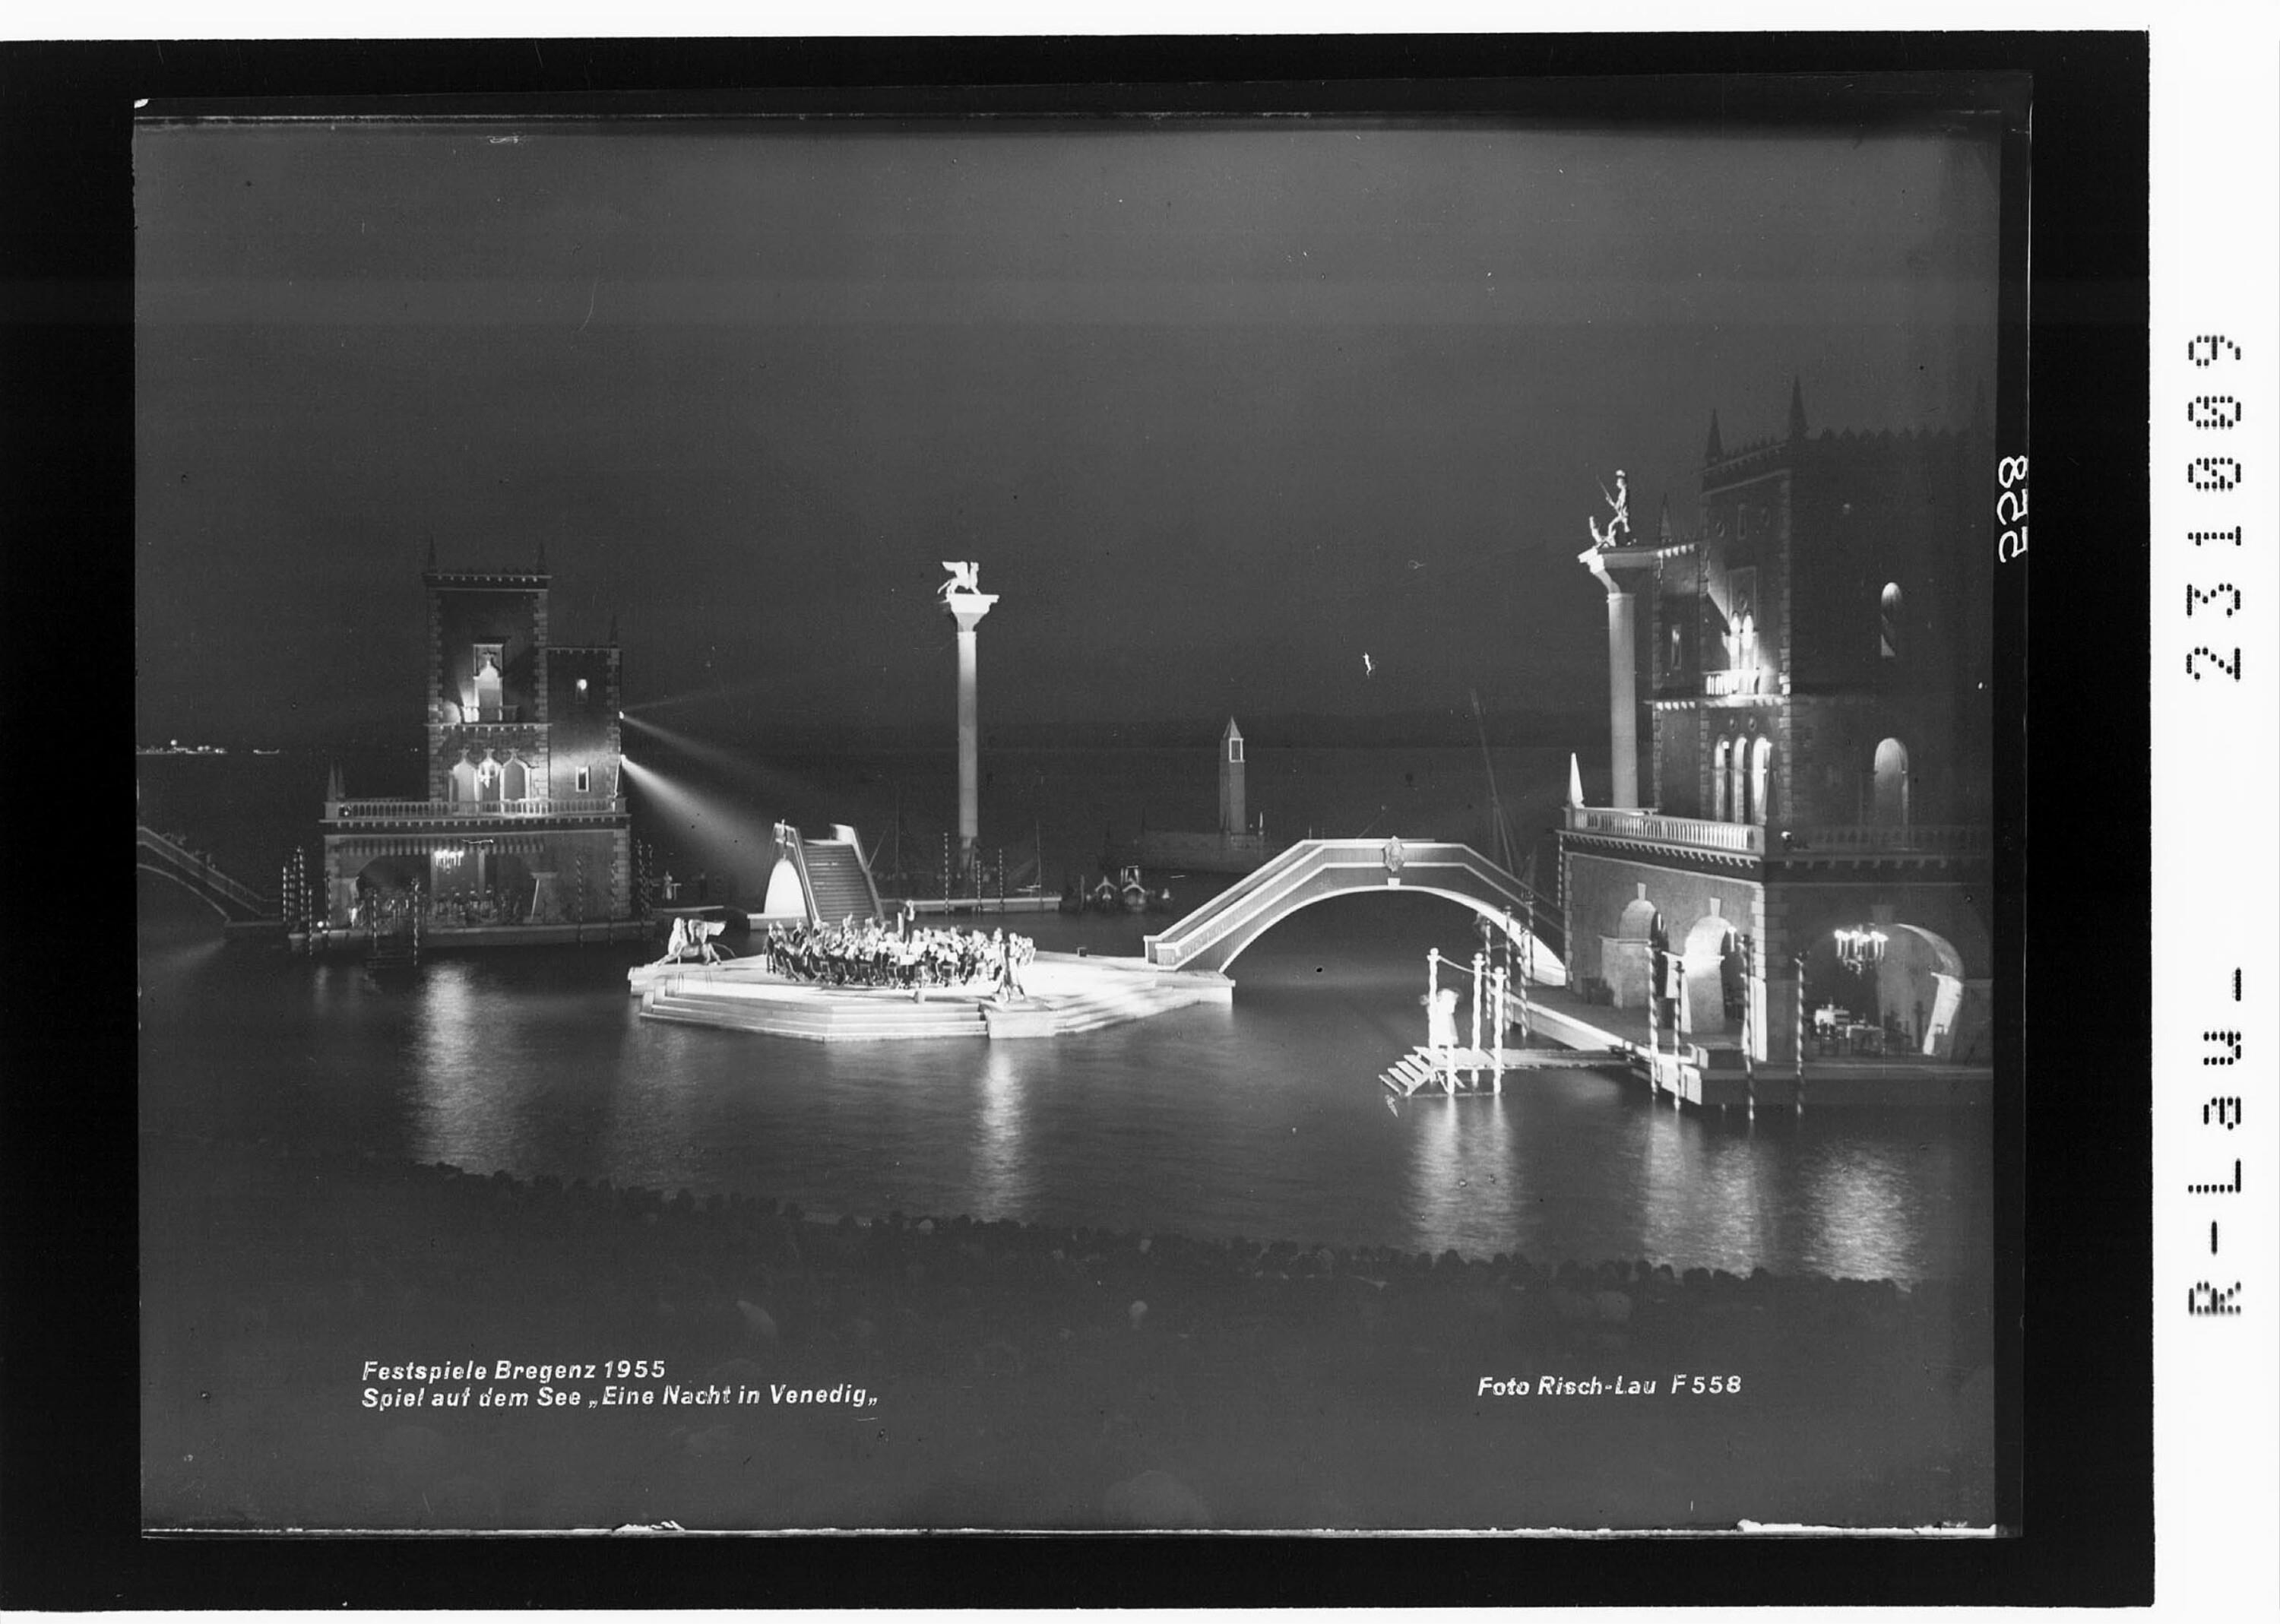 Festspiele Bregenz 1955 / Spiel auf dem See - Eine Nacht in Venedig></div>


    <hr>
    <div class=